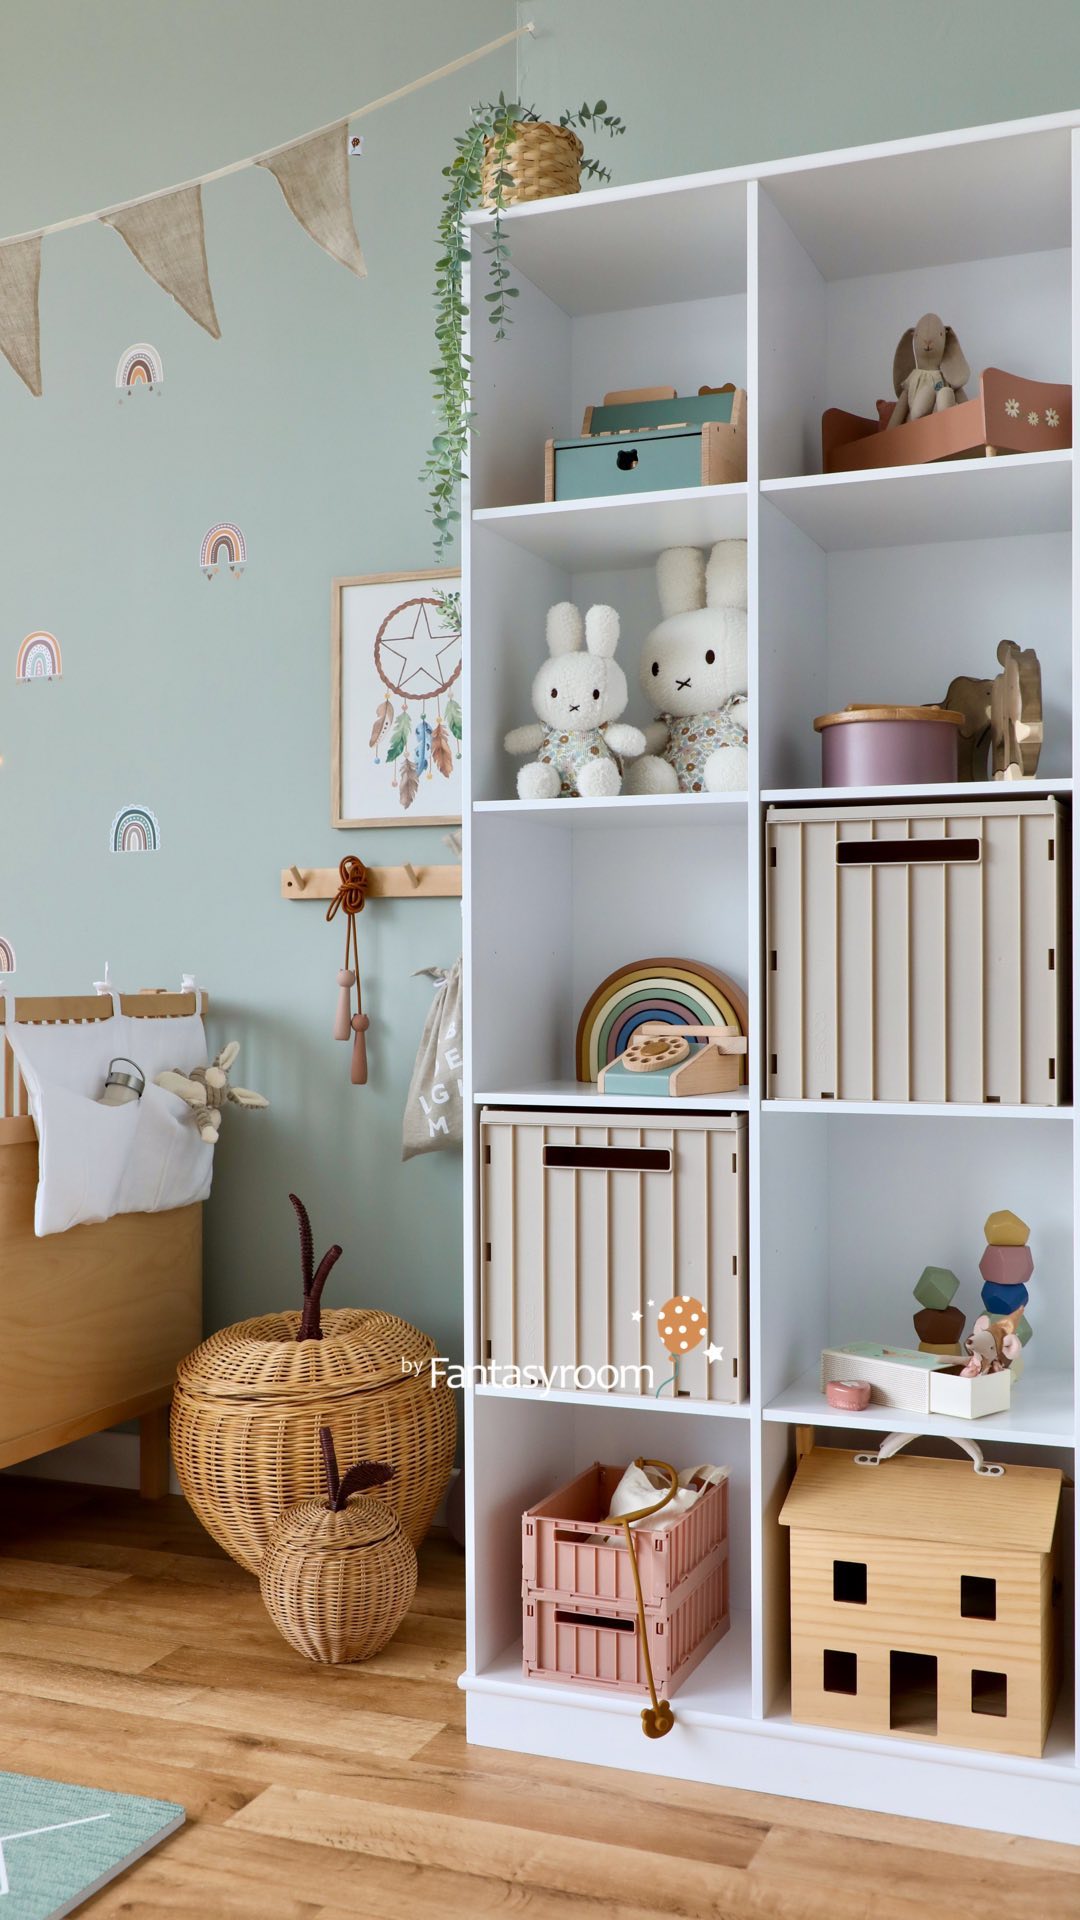 Heute haben wir Kinderzimmer Inspiration für euch! 🧡 Sanftes Jadegrün an den Wänden, kuschelige Textilien aus reinem Leinen, Möbel in Weiß und Natur und viele tolle Spielsachen machen Lust aufs Spielen und Träumen. ⁠
⁠
Was sagt ihr? 🤩 Wir freuen uns auf euer Feedback! 🤗⁠
⁠
Wandfarbe: Harmonisches Jadegrün von @schoenerwohnenfarbe. Möbel und Deko haben wir im Shop für euch!⁠
⁠
www.my-fantasyroom.de ✨⁠
.⁠
.⁠
.⁠
#myfantasyroom #fantasyroomdeko #kinderzimmer #fantasyroom #dekoration #barnrum #barnerom #roominspiration #kinderzimmerdeko #kinderzimmerideen #kinderzimmerinspo #kinderzimmerdekoration #kinderzimmereinrichtung #kinderzimmerinspiration #kidsroom #kidsroomdecor #kidsroominspo #kidsroominspiration #kidsroomideas #kidsroominterior #schönerwohnen #sebra #kindermöbel #oliverfurniture #dinkiballoon #nachhaltigeskinderzimmer #sustainable #toddlerroom #kleinkindzimmer